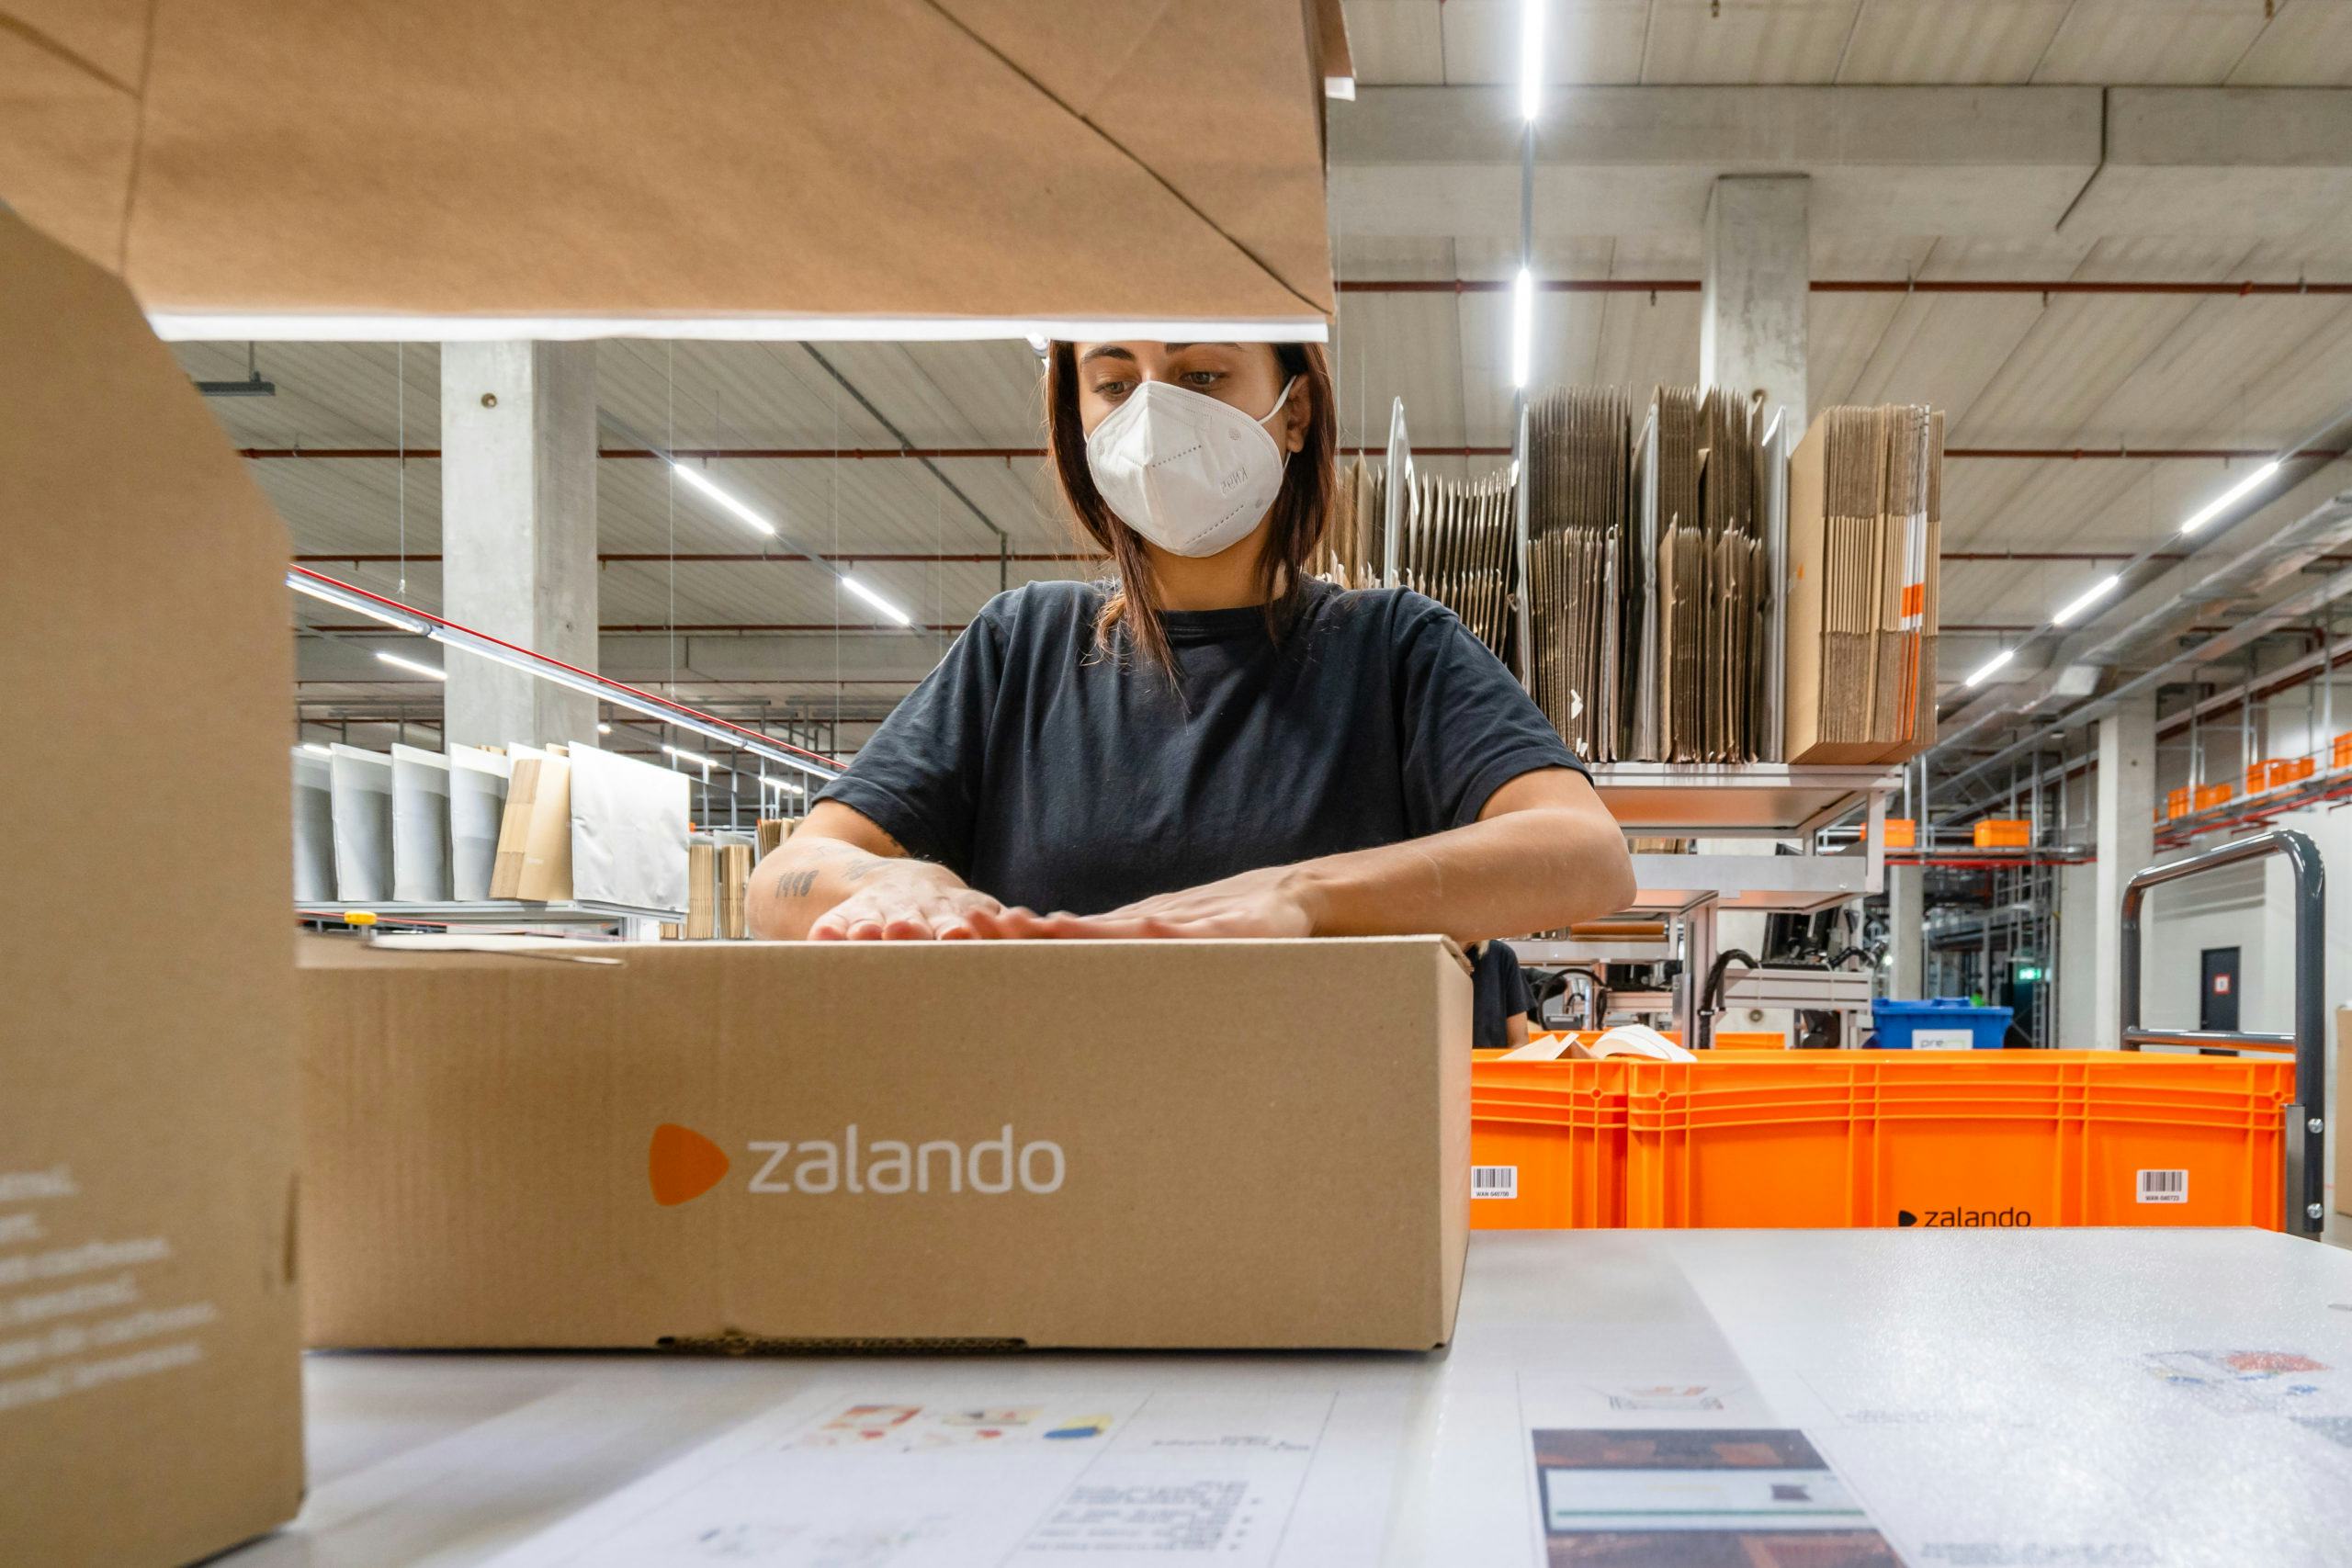 Zalando verstuurt eerste pakket uit gemechaniseerd DC in Bleiswijk